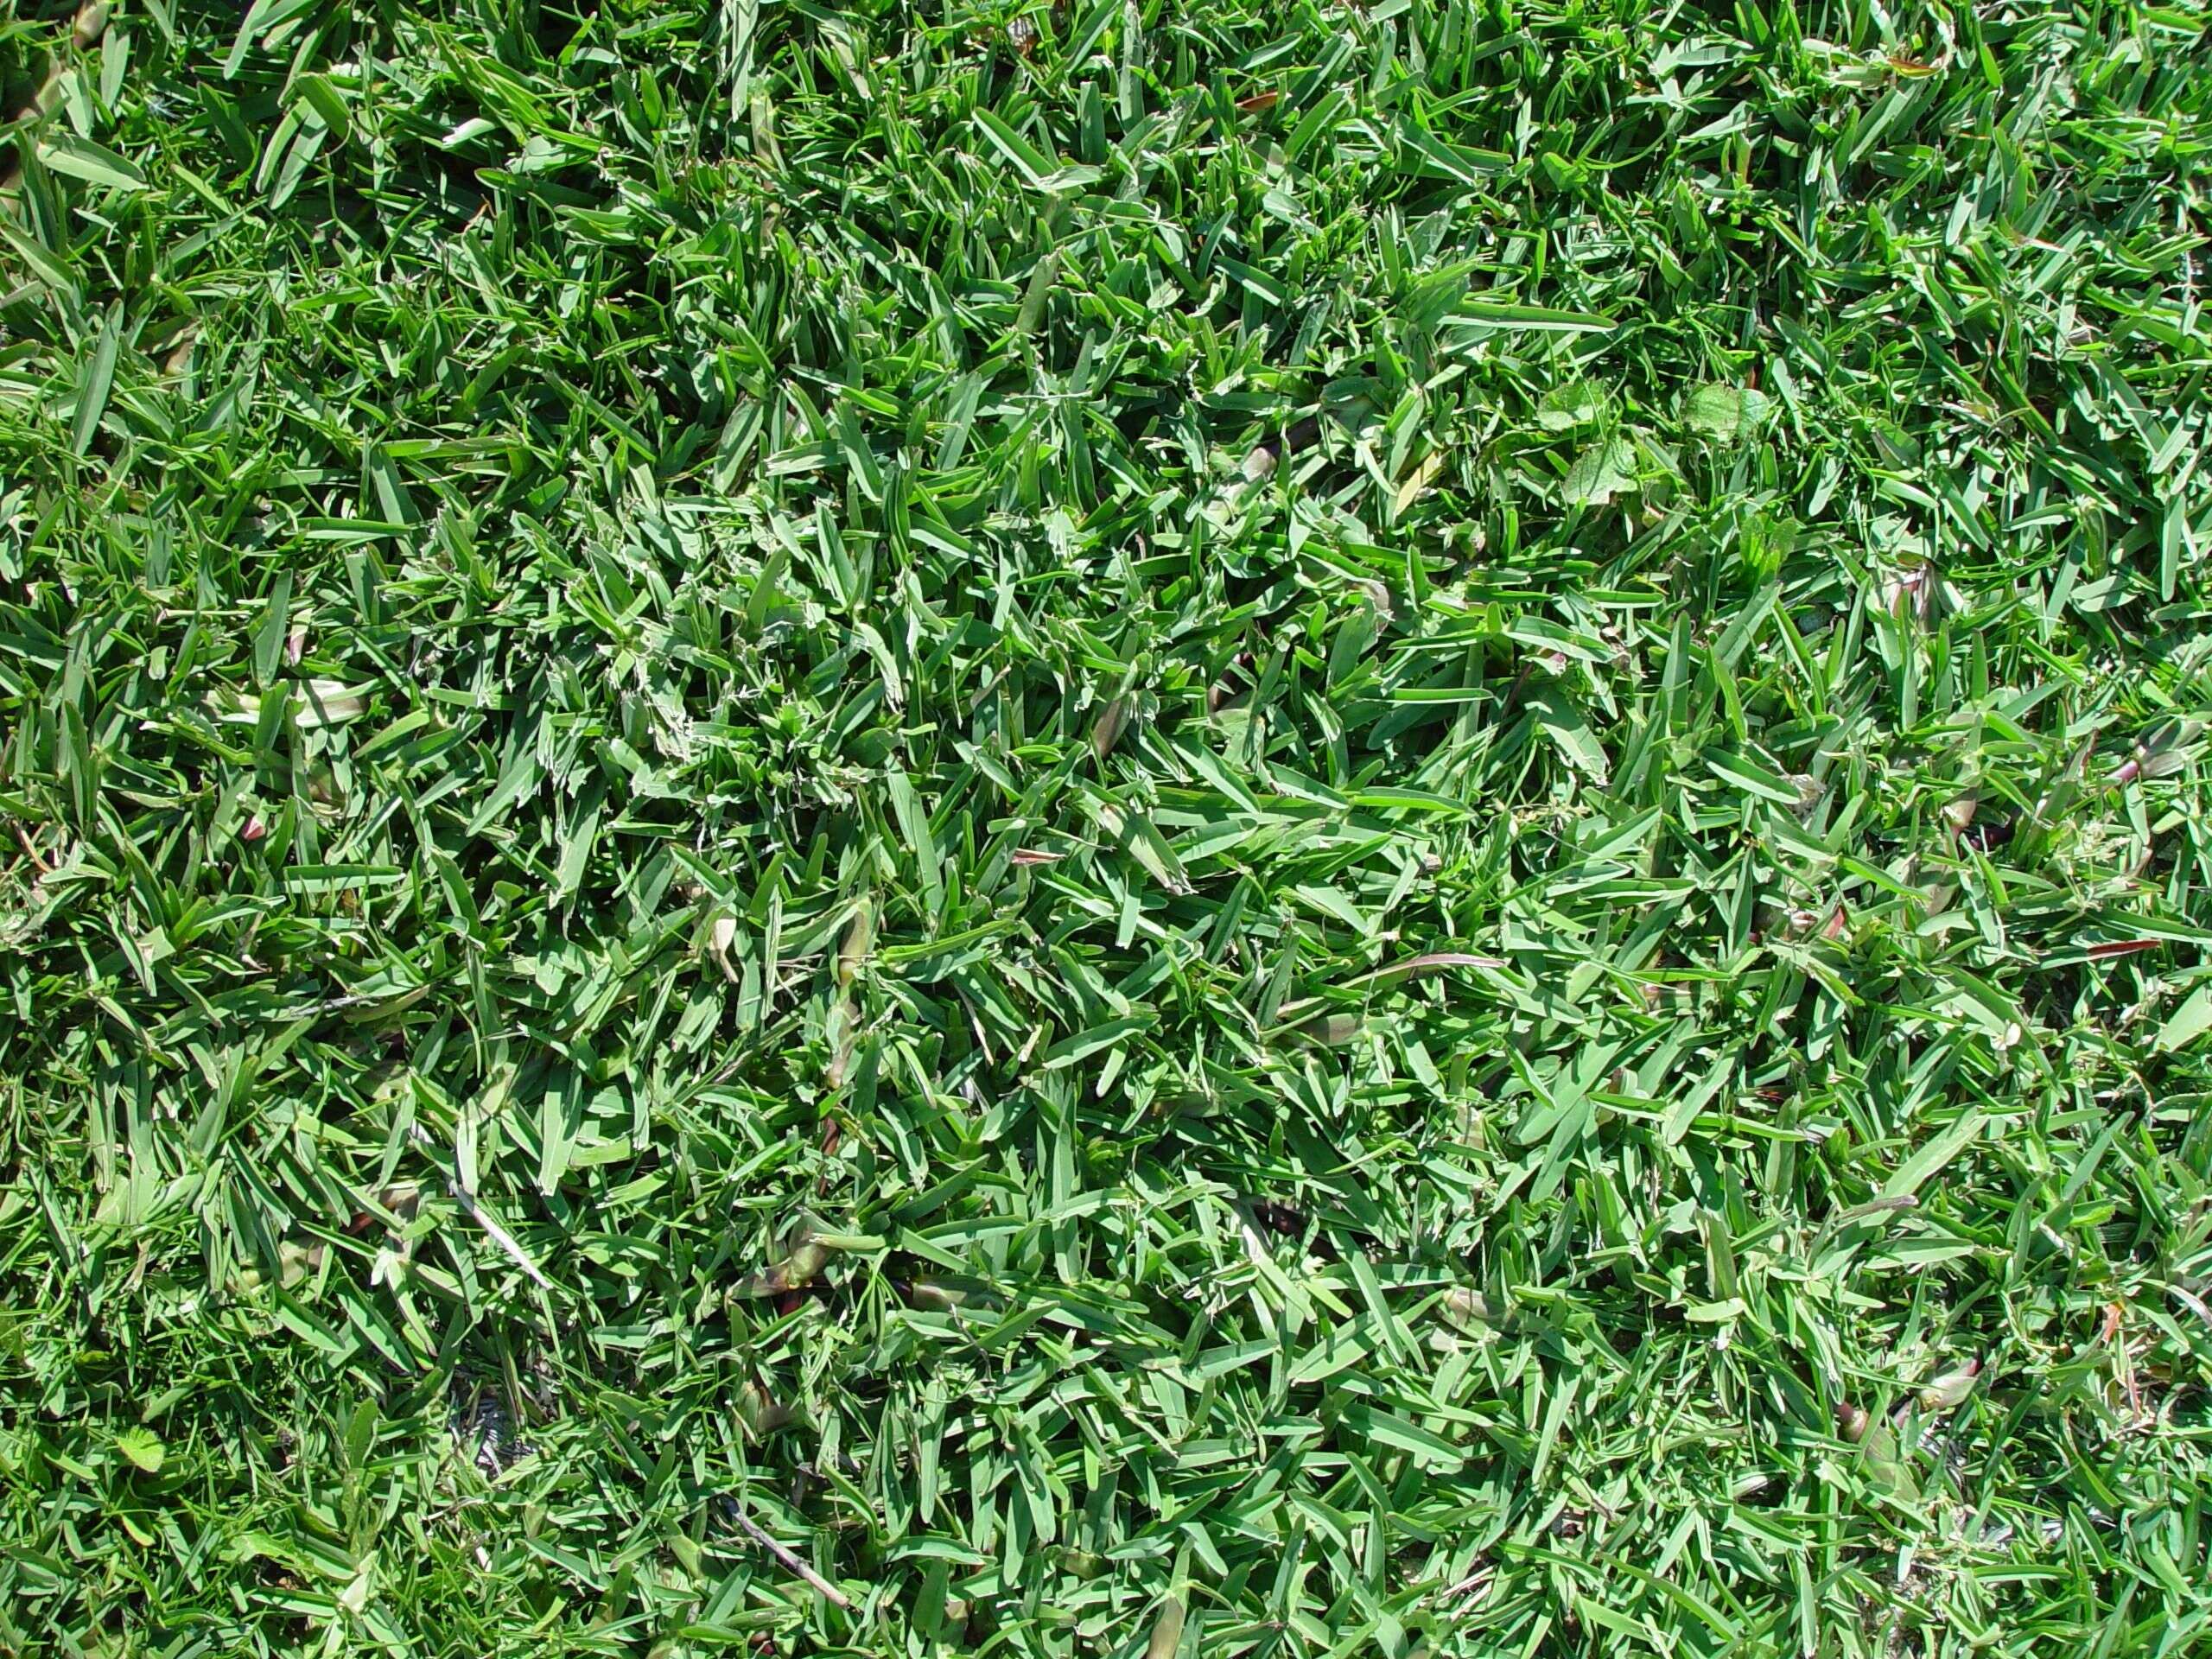 Image of Buffalo Grass